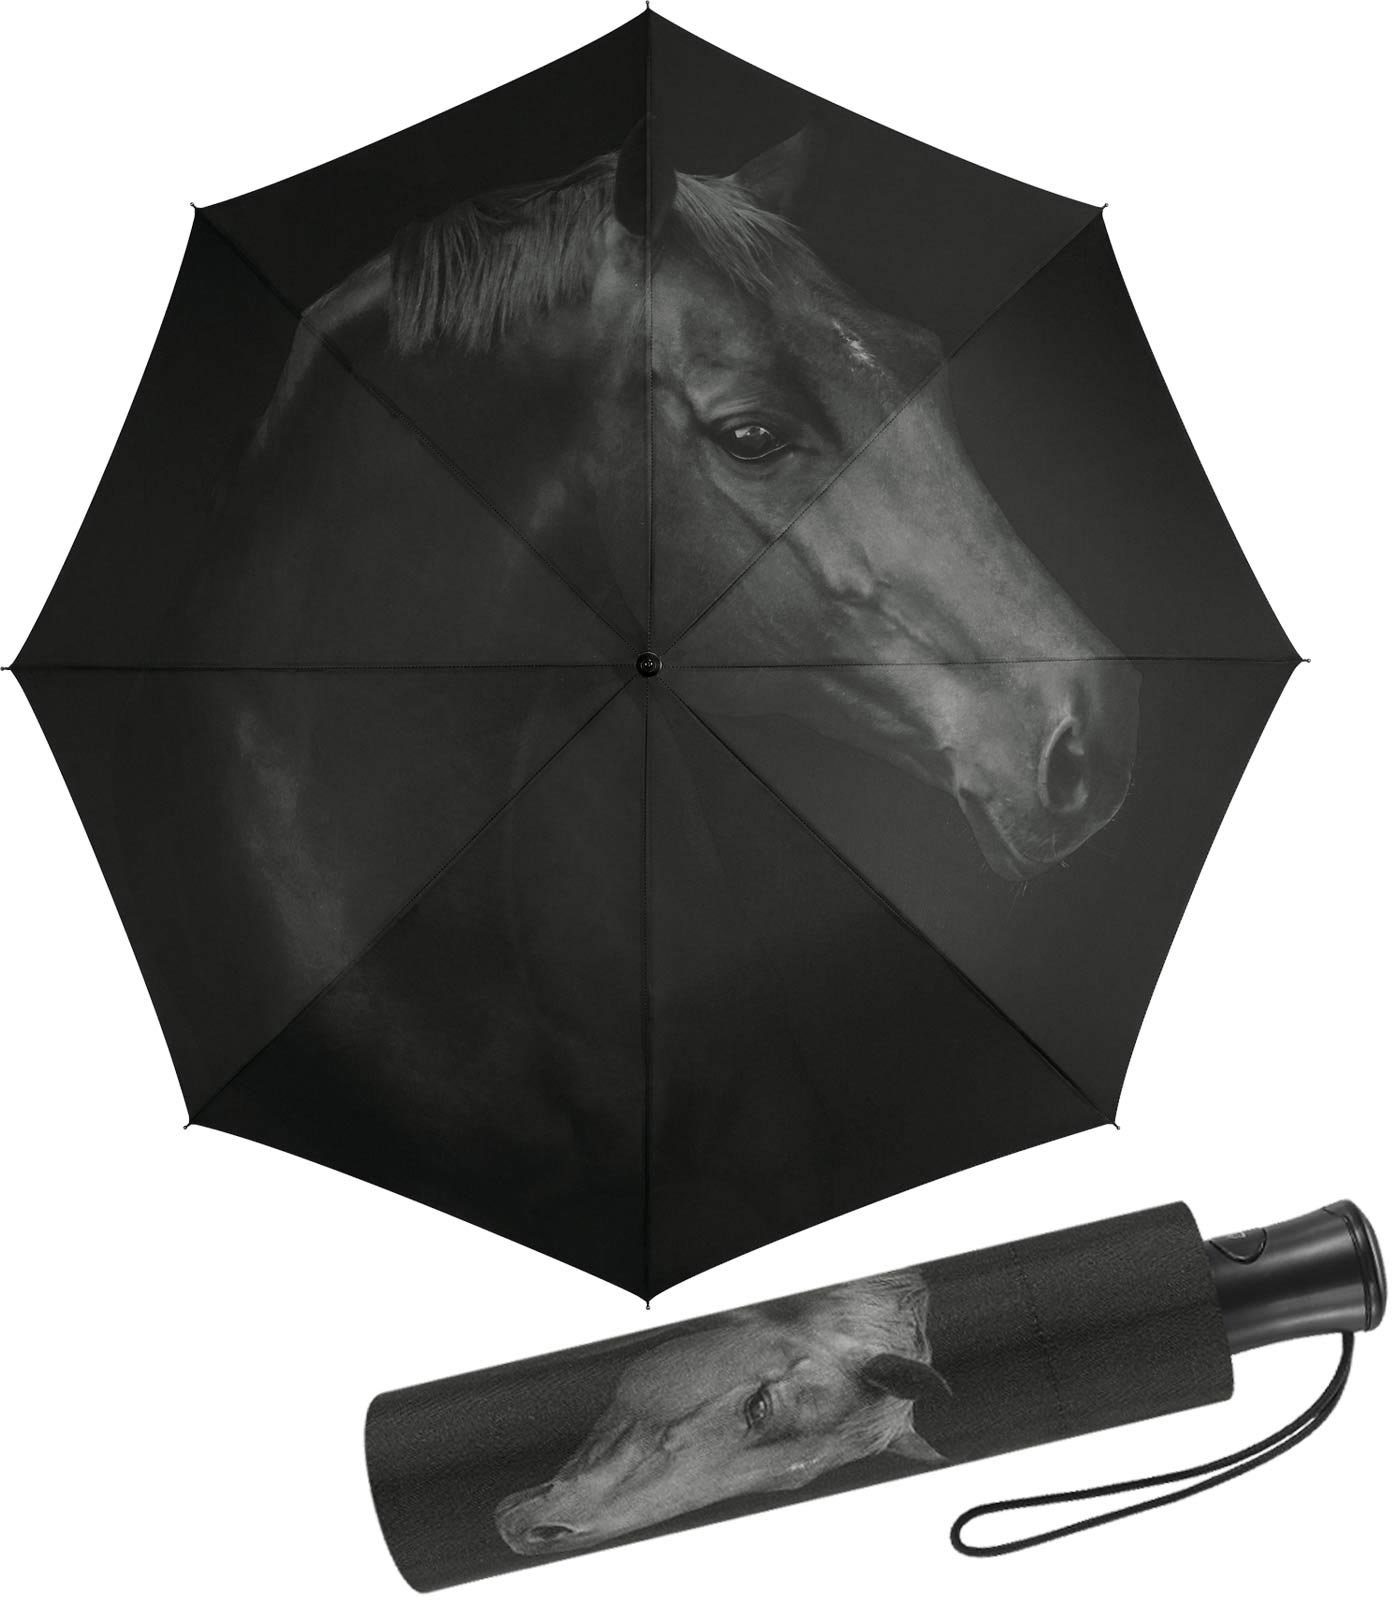 HAPPY RAIN Langregenschirm schöner Damen-Regenschirm mit Auf-Automatik, mit wunderschönem schwarzen Pferde-Motiv